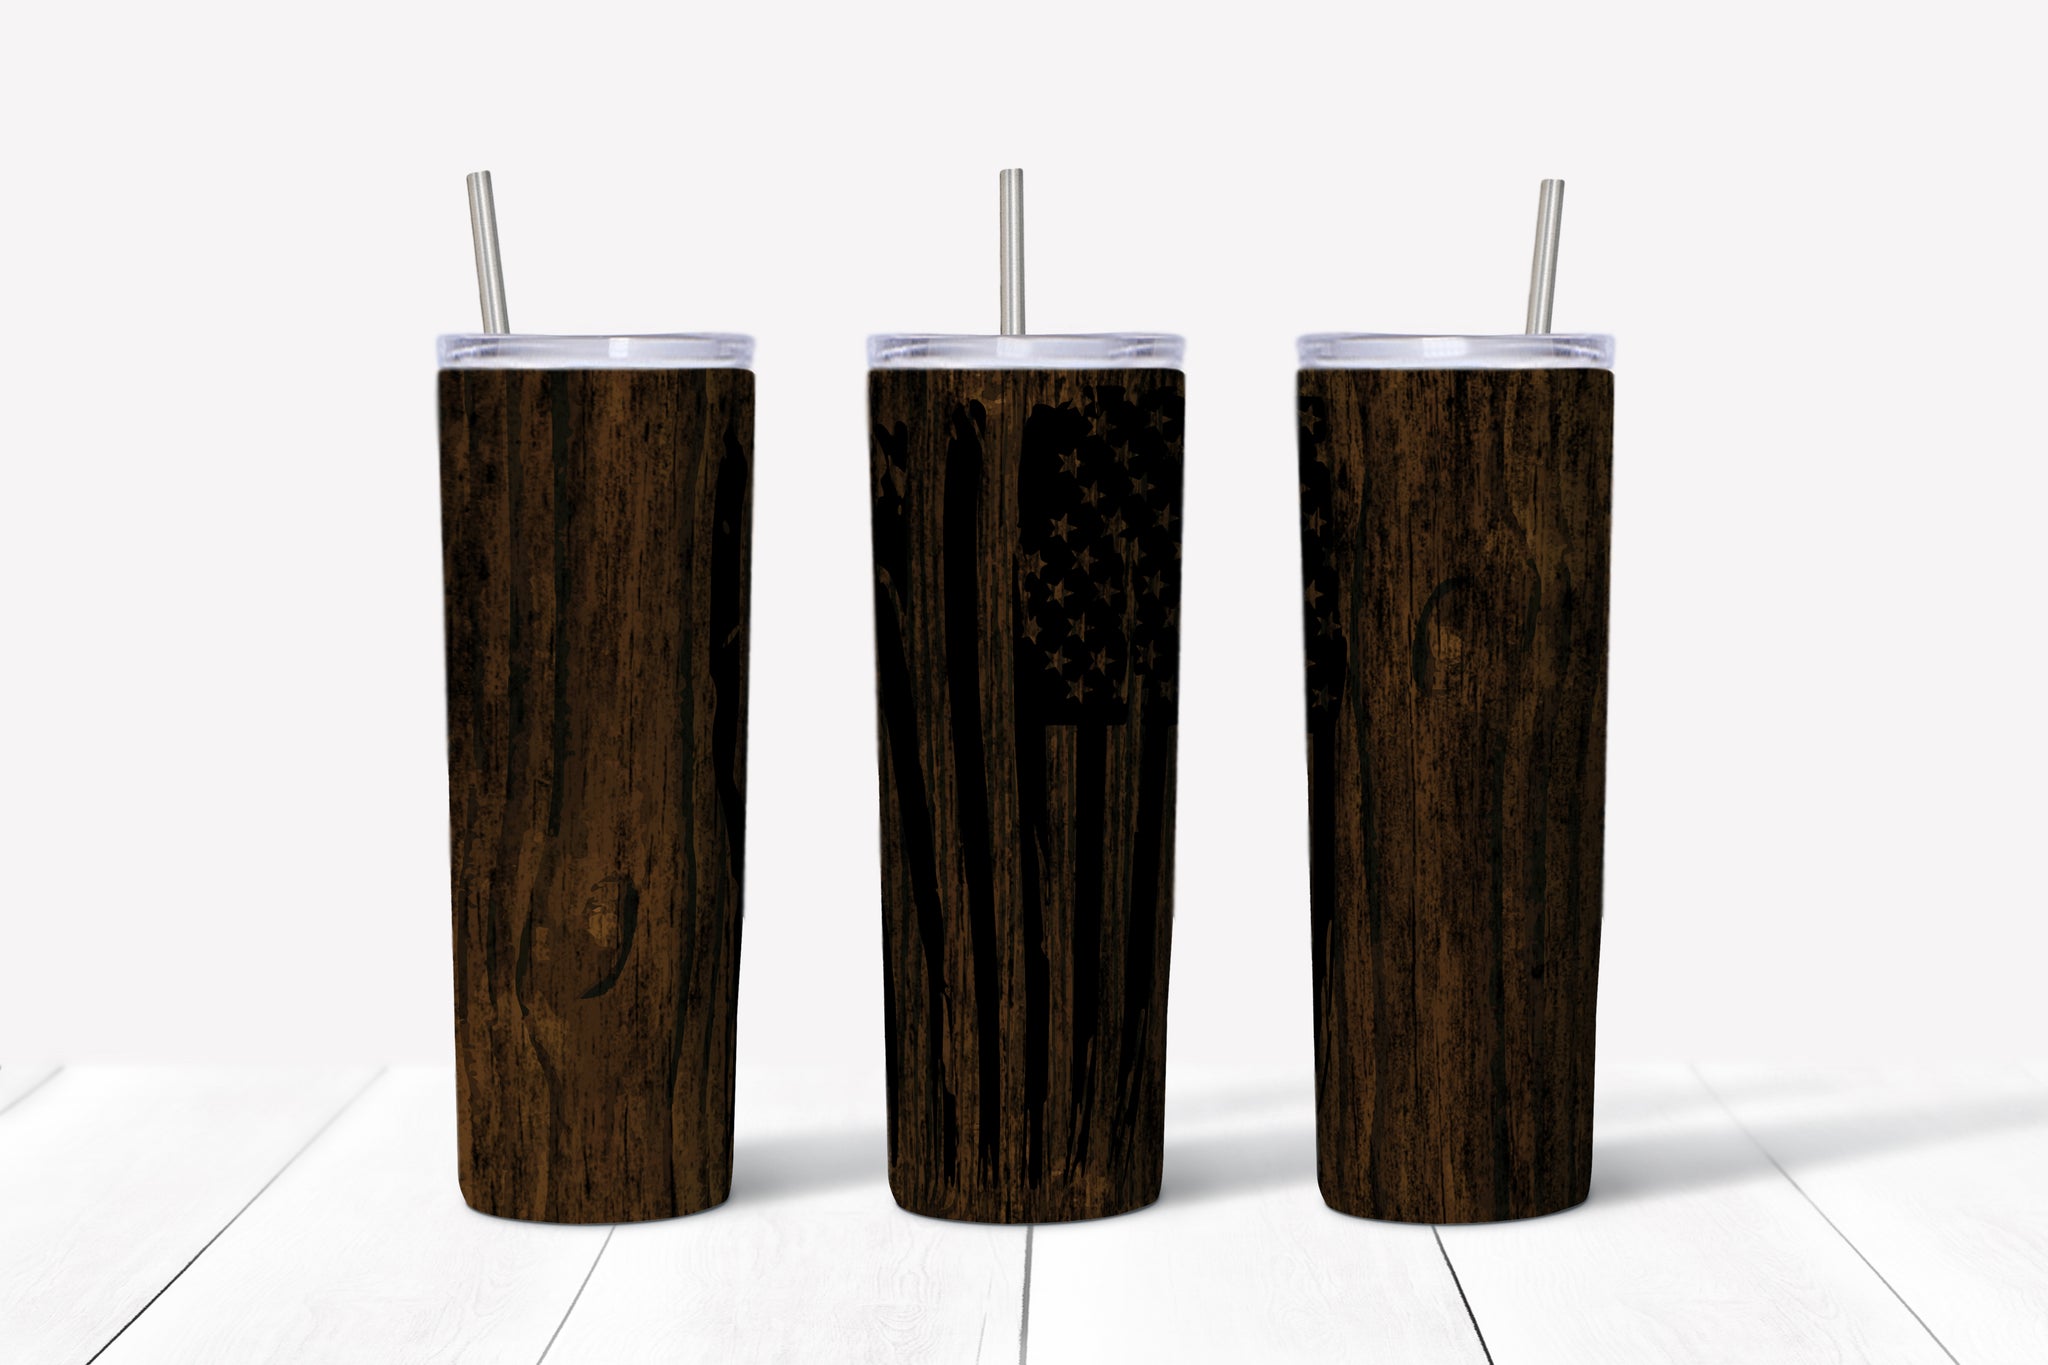 Wood Grain - Distressed American Flag Tumbler